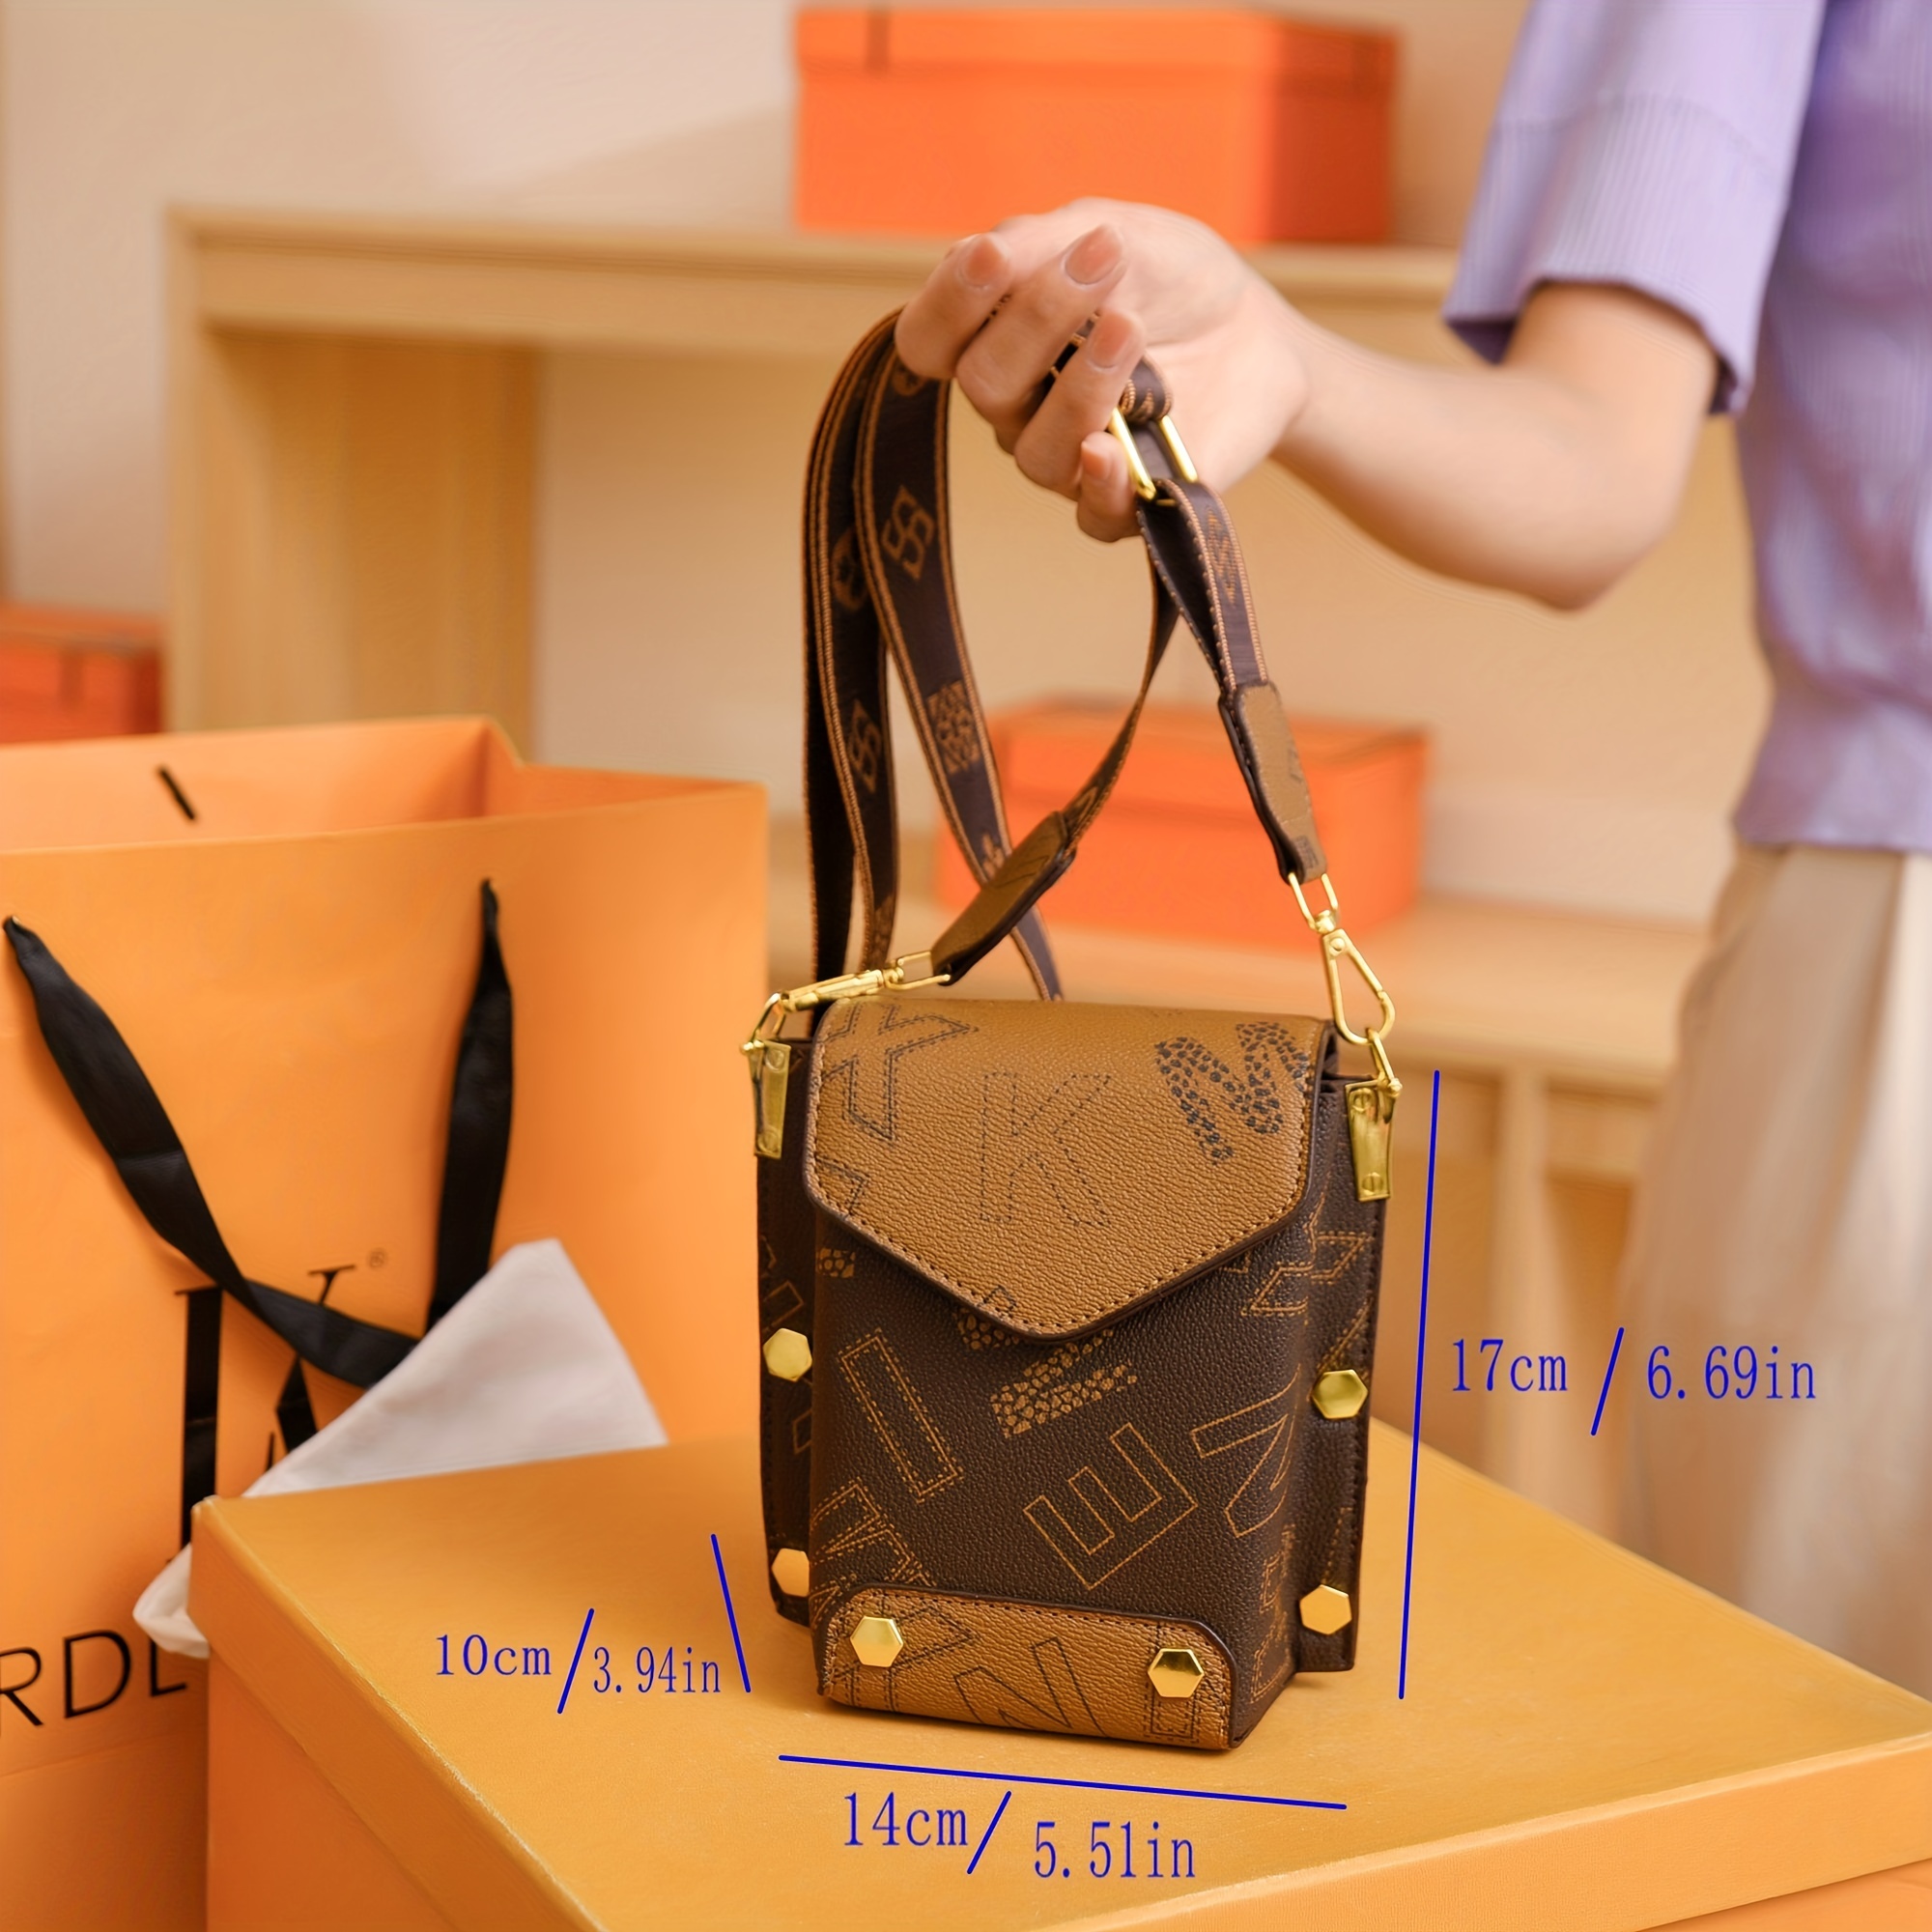 Louis Vuitton Orange Paper Bag  Orange paper, Bags, Printed bags